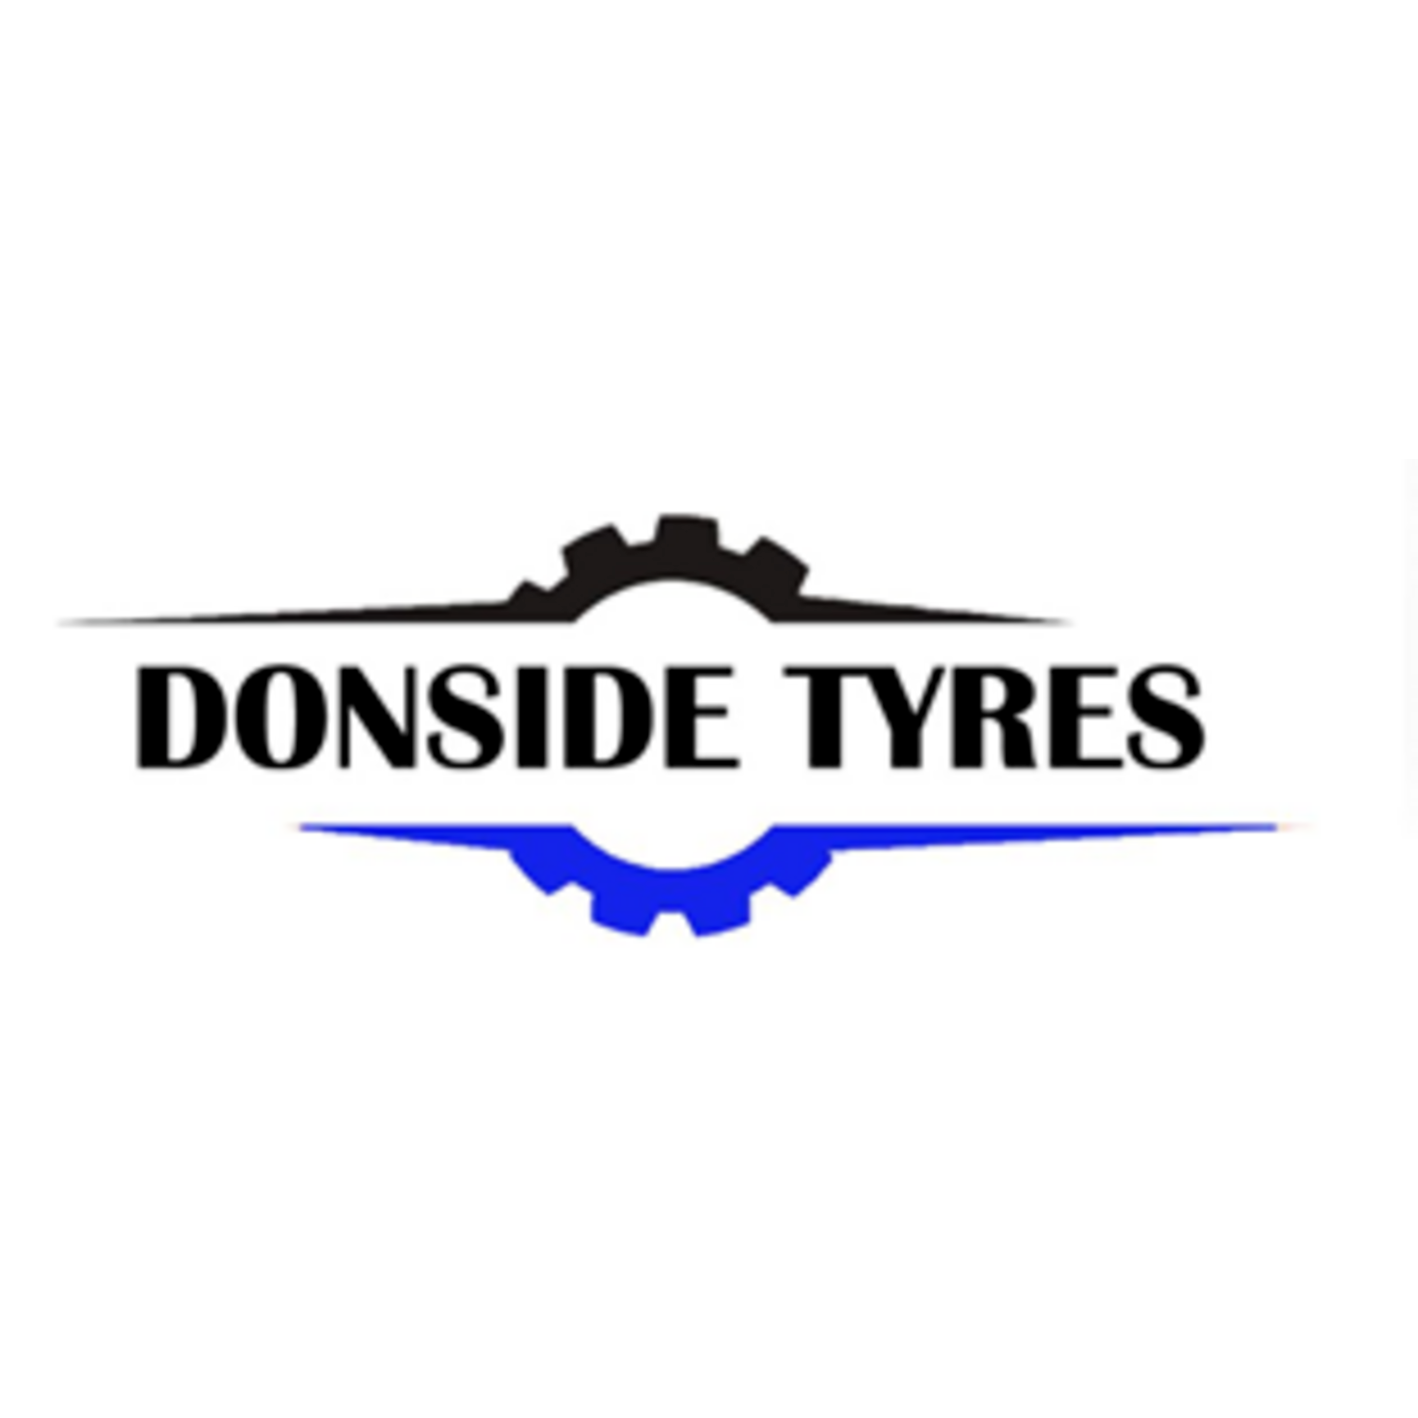 Donside Tyres in Alford, Aberdeen - Logo Donside Tyres Alford 01975 562018